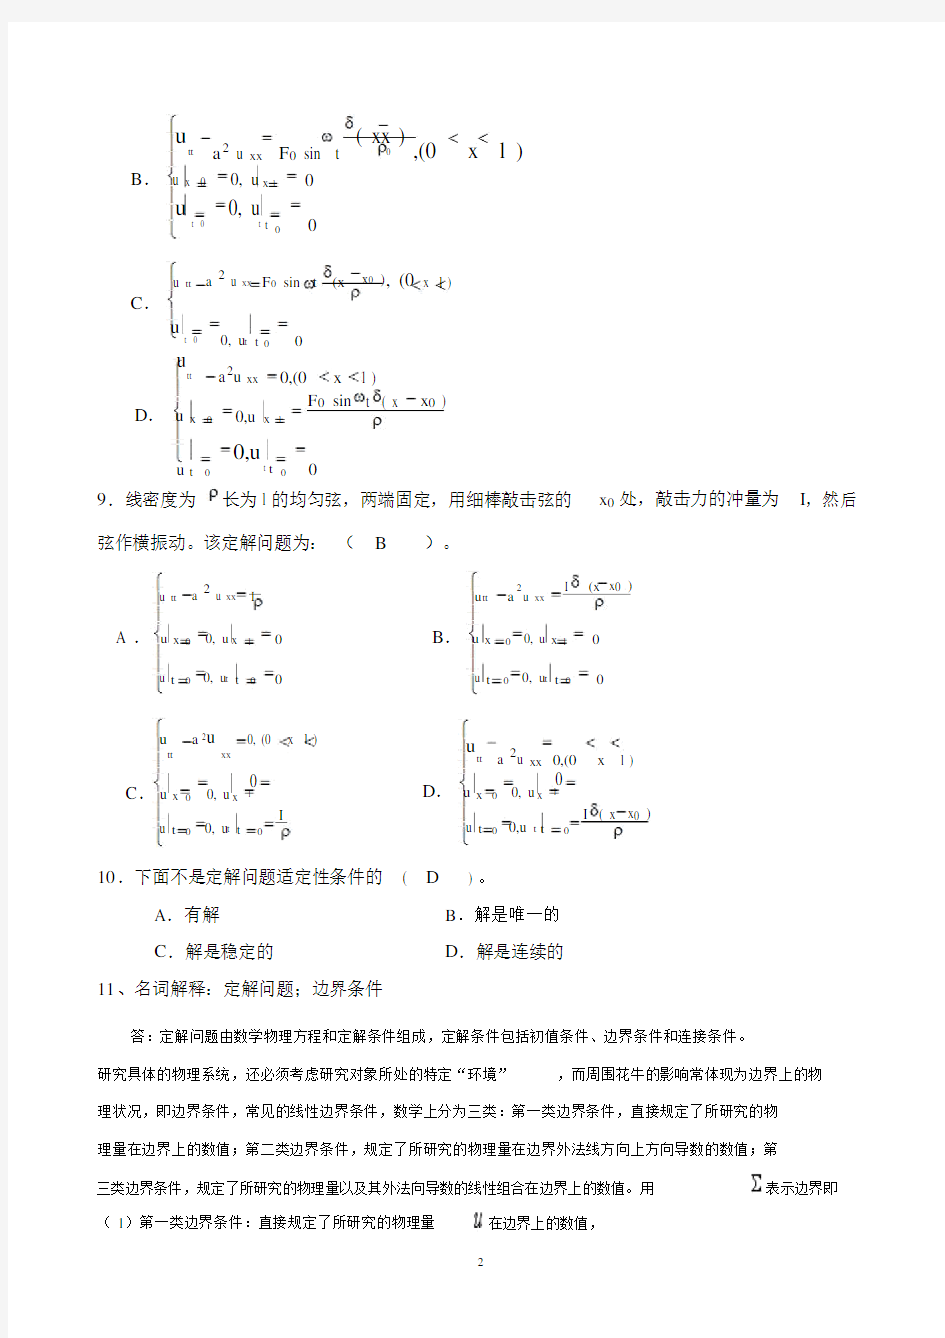 数学物理方法第二次作业答案